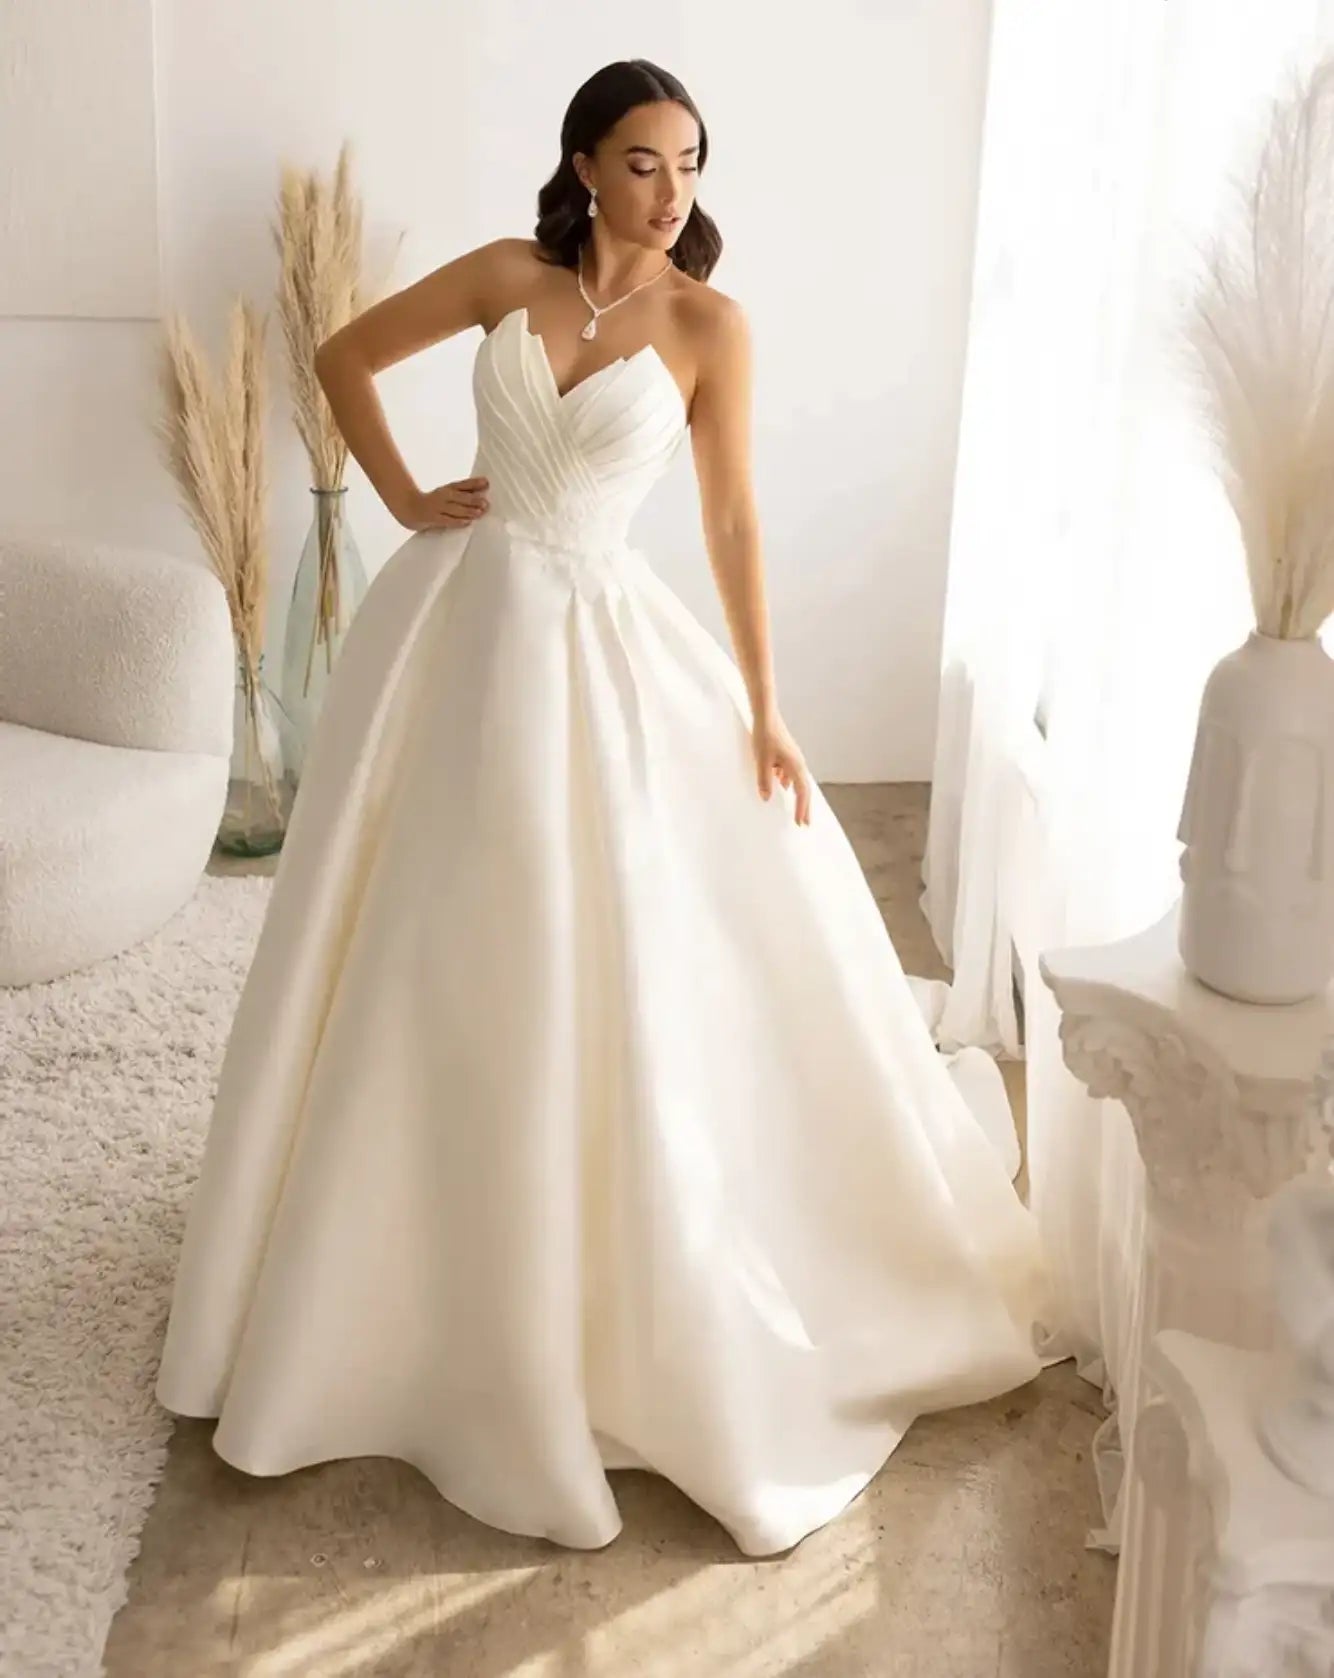 12 Ball Gowns Wedding Dresses You'll Love - Galia Lahav